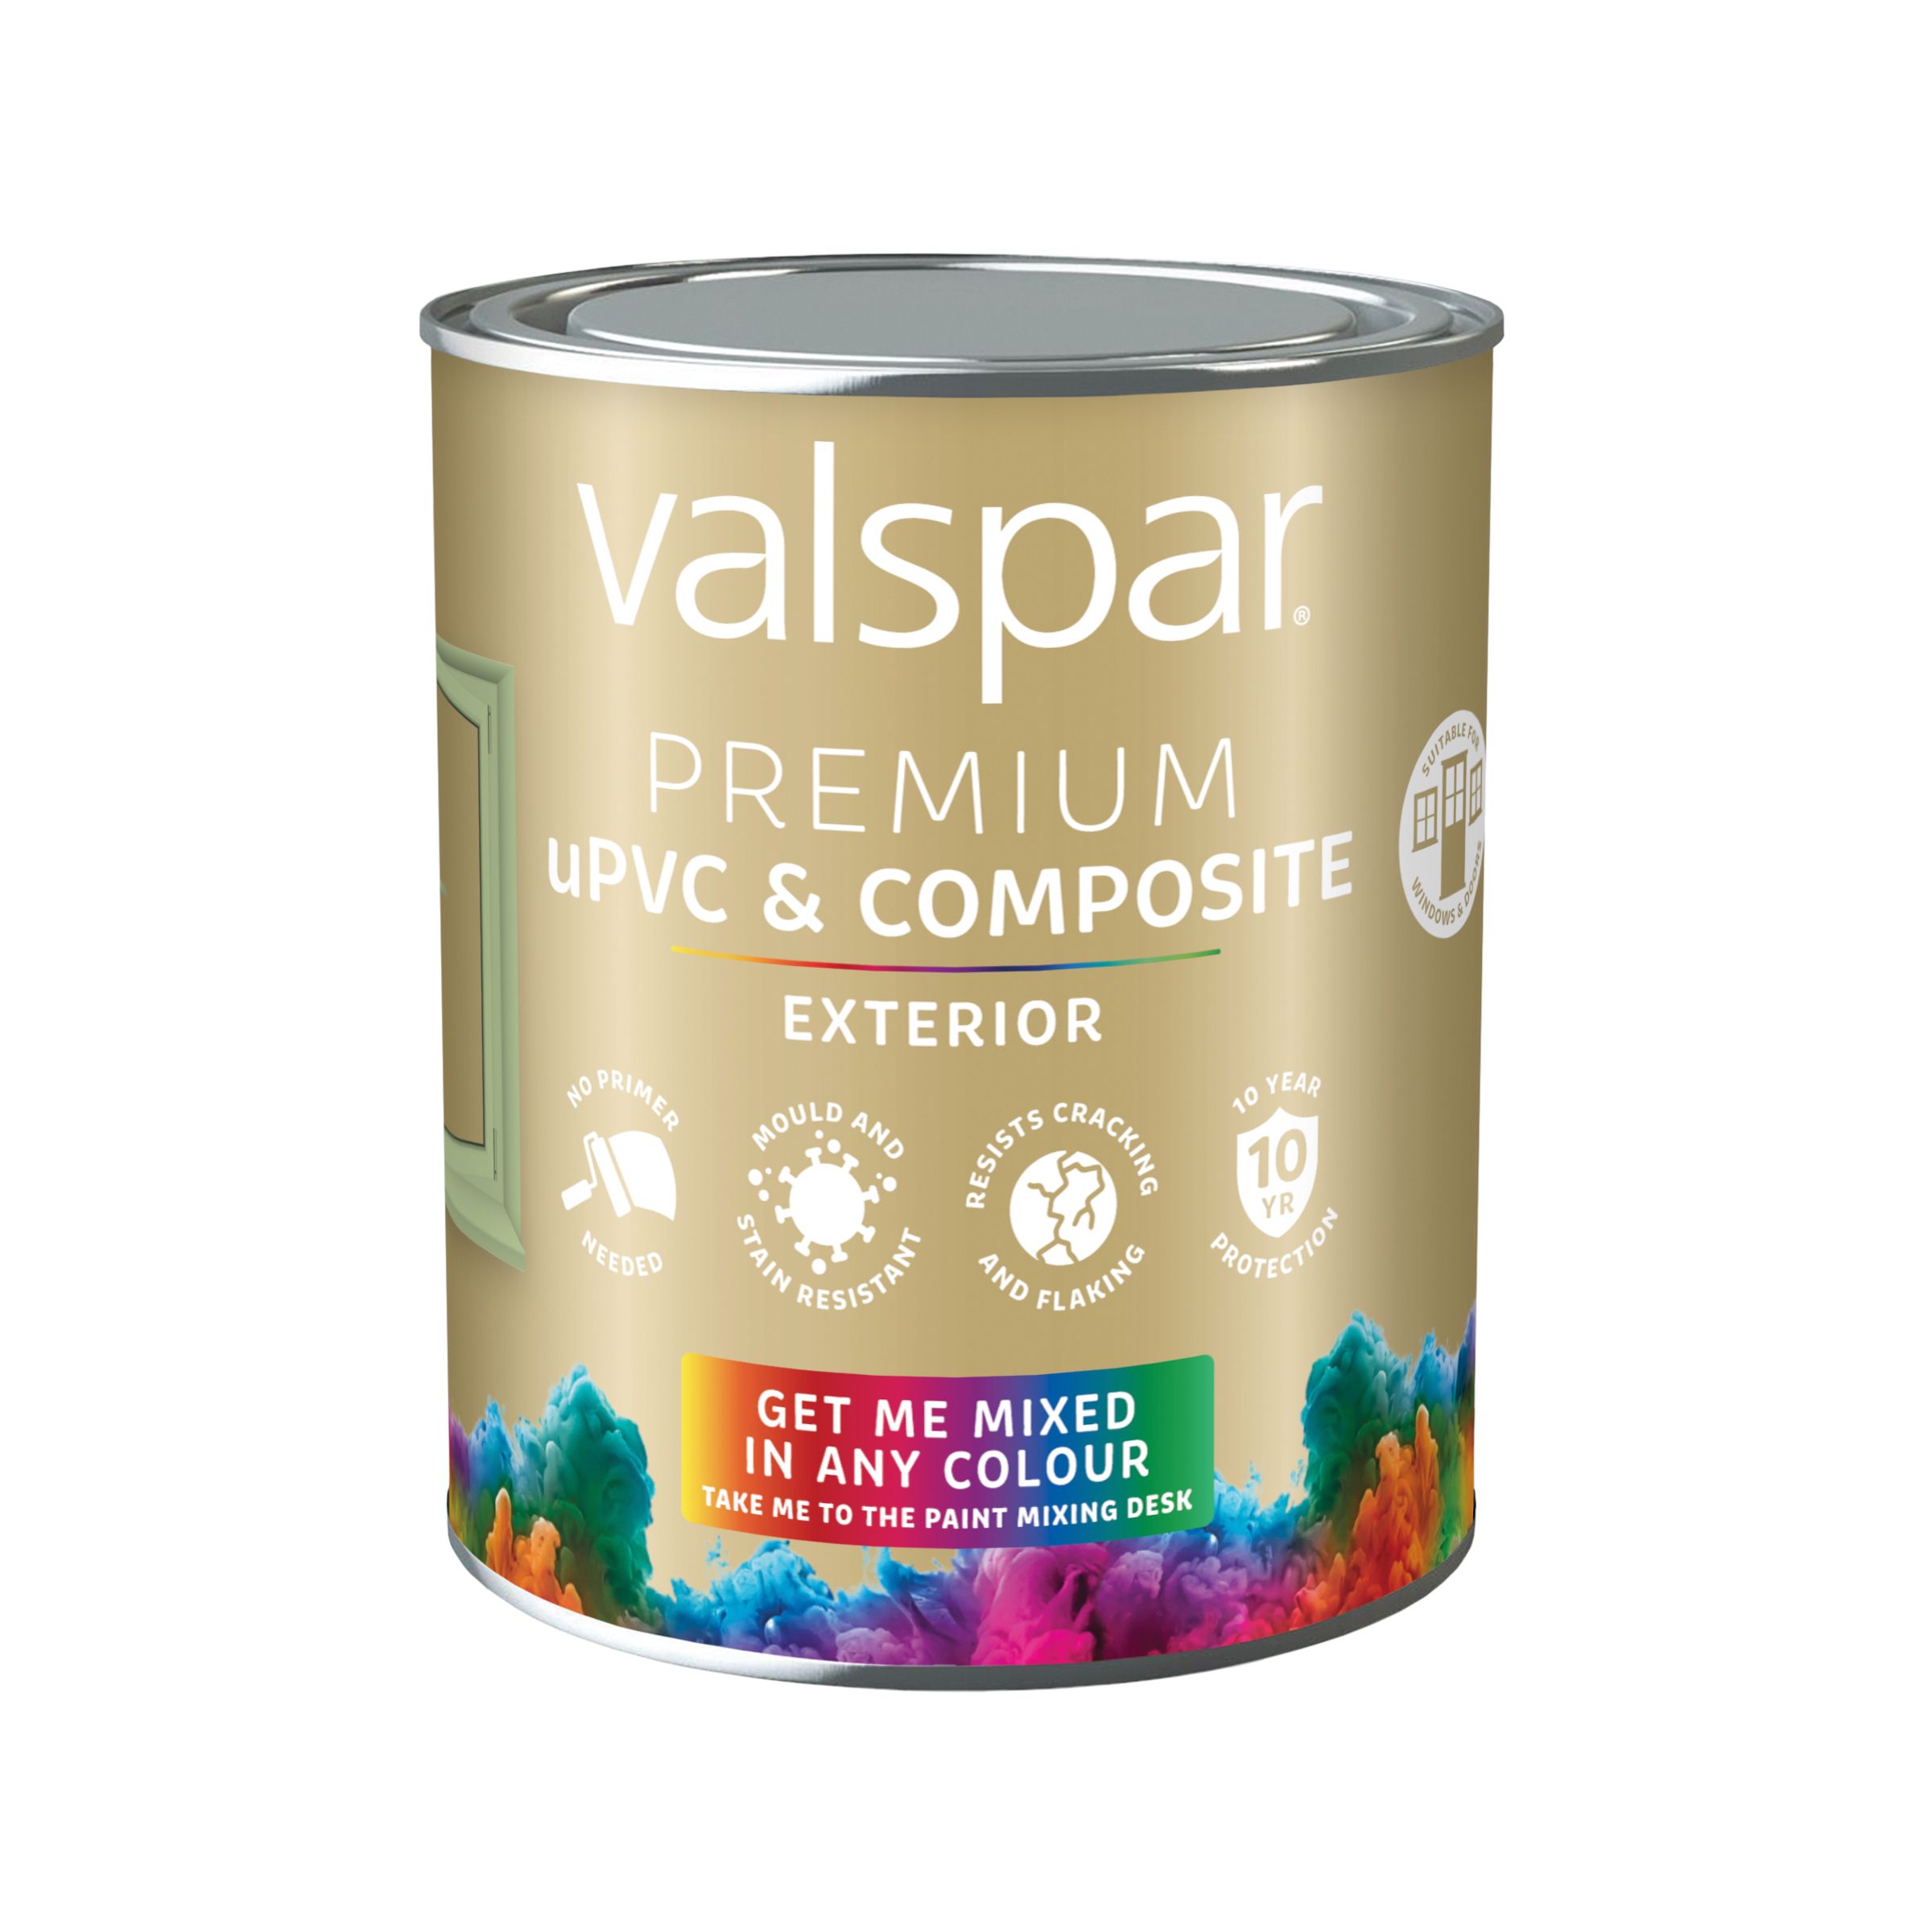 Valspar Premium Exterior uPVC & composite Multi-surface Satin Paint, Base 1, 750ml